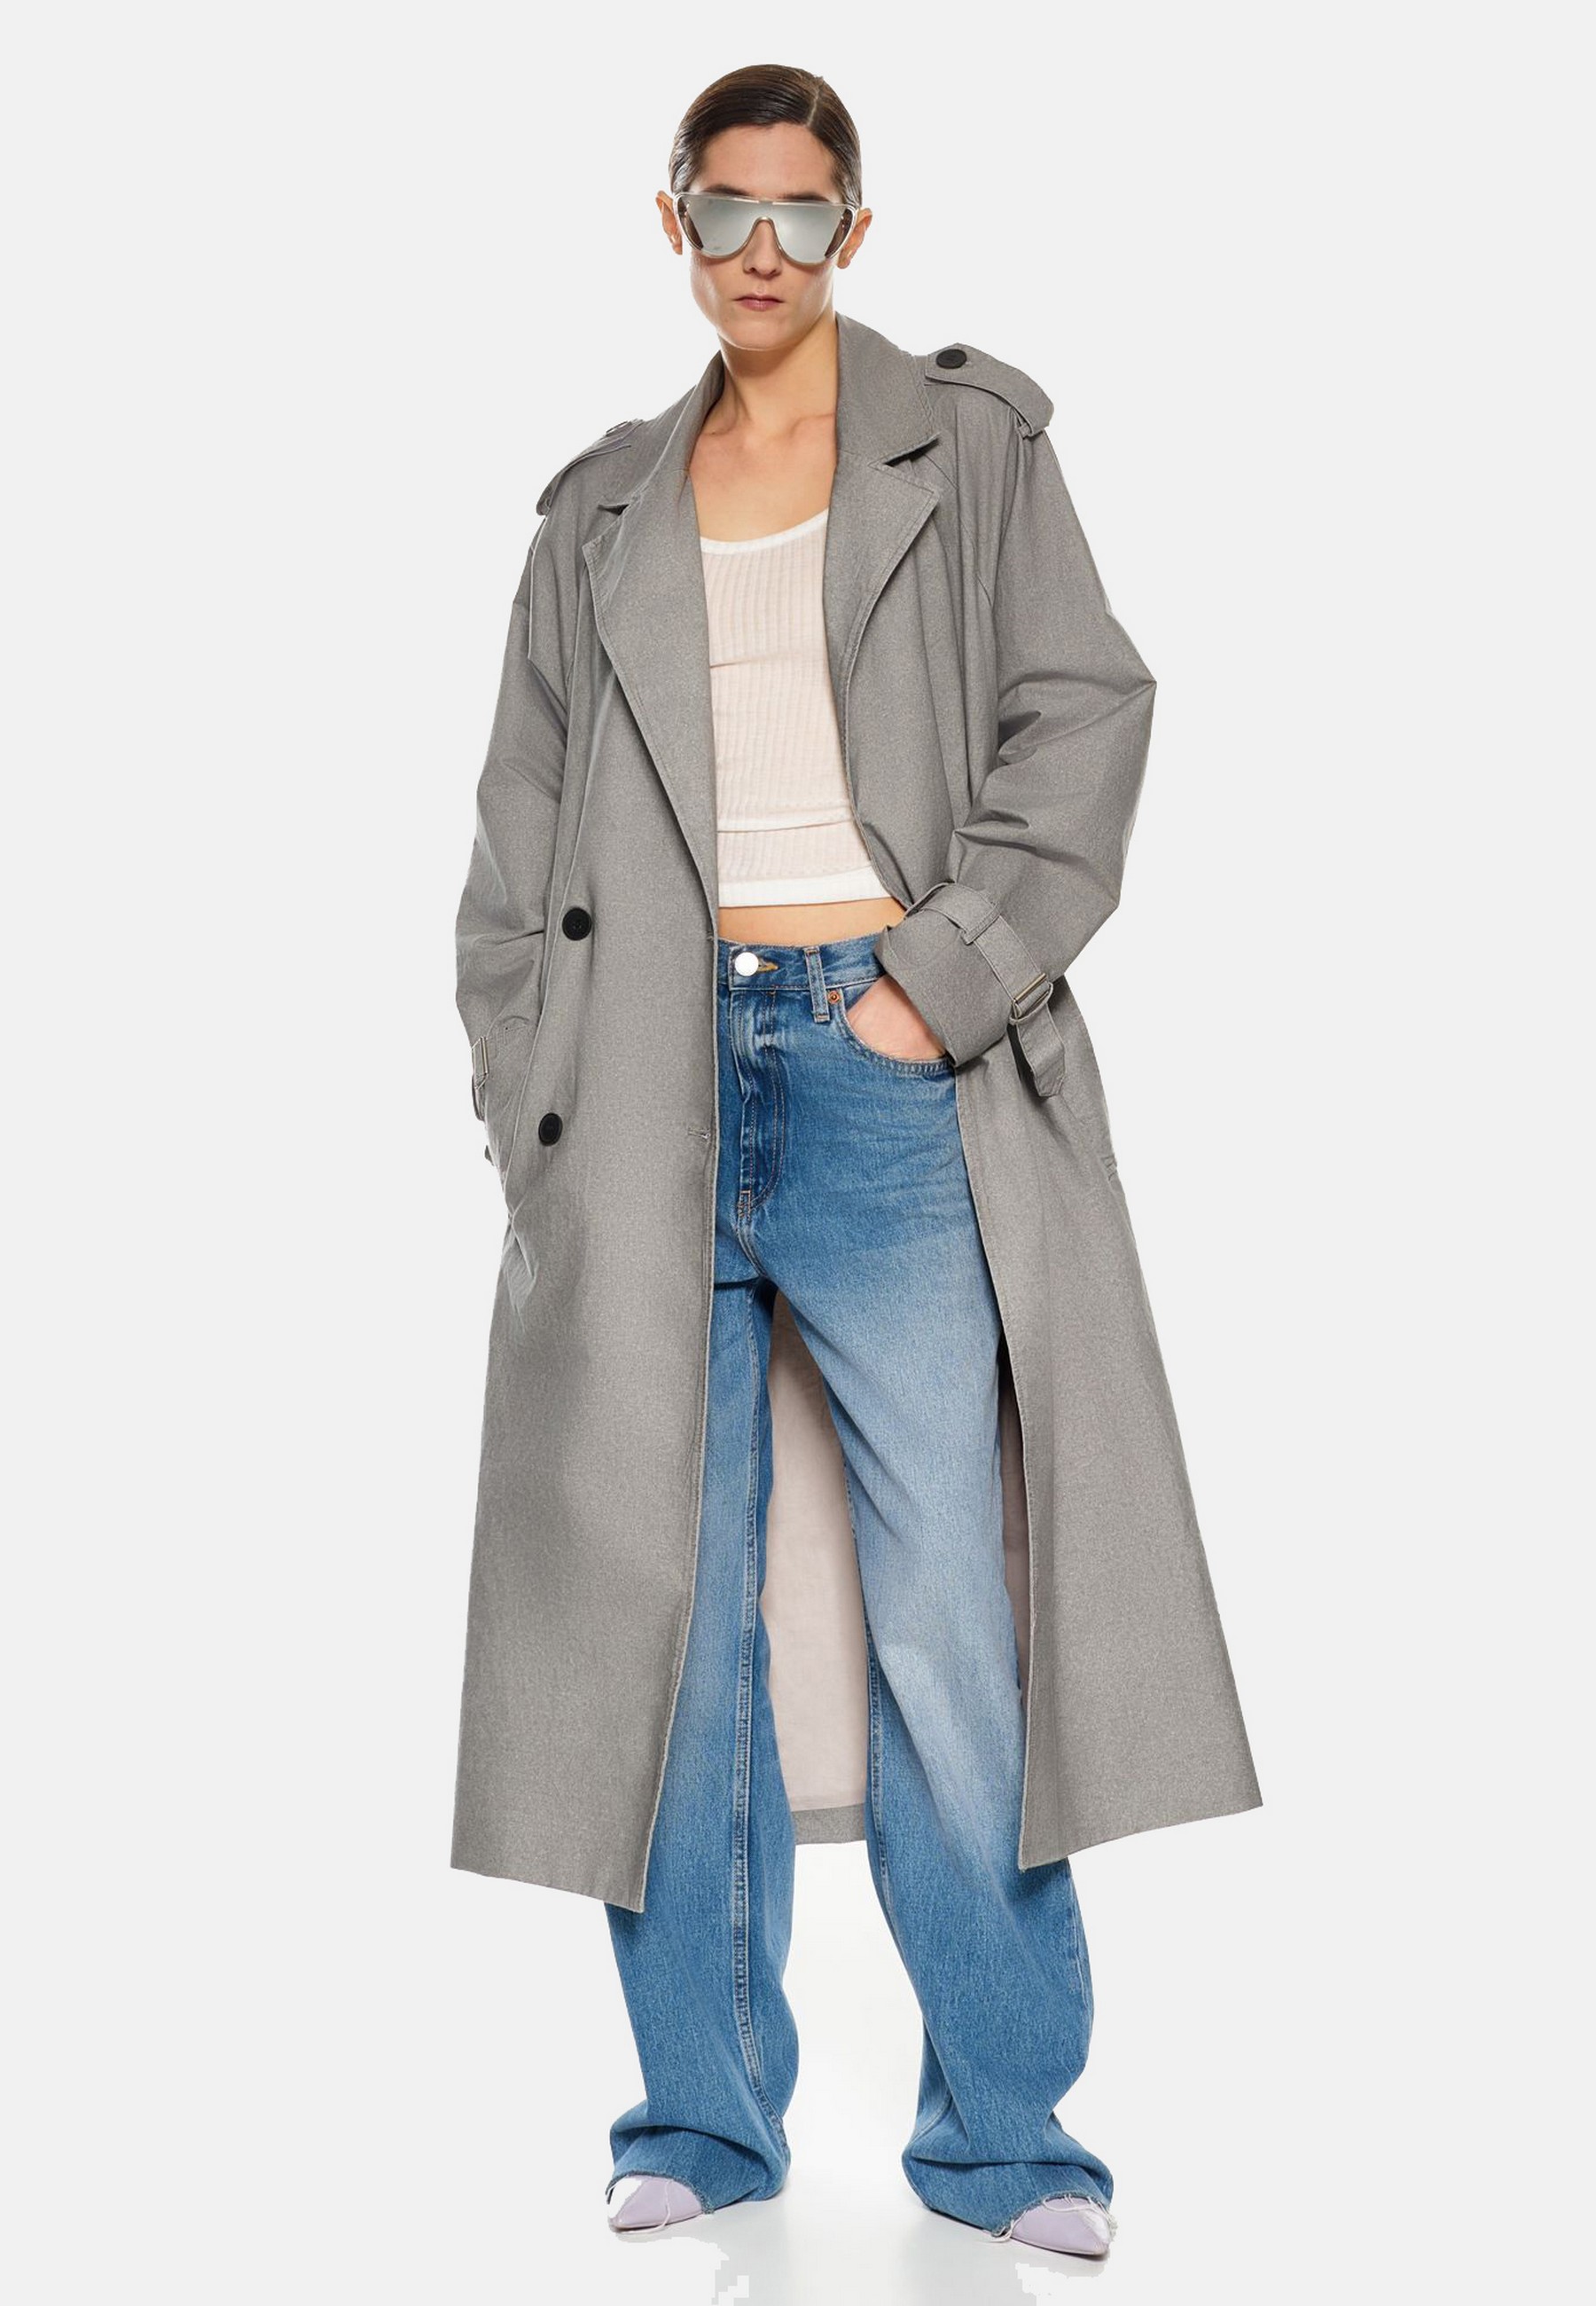 Damen Textil Mantel Clarissa in Grau von Ricano - Vollansicht am Model